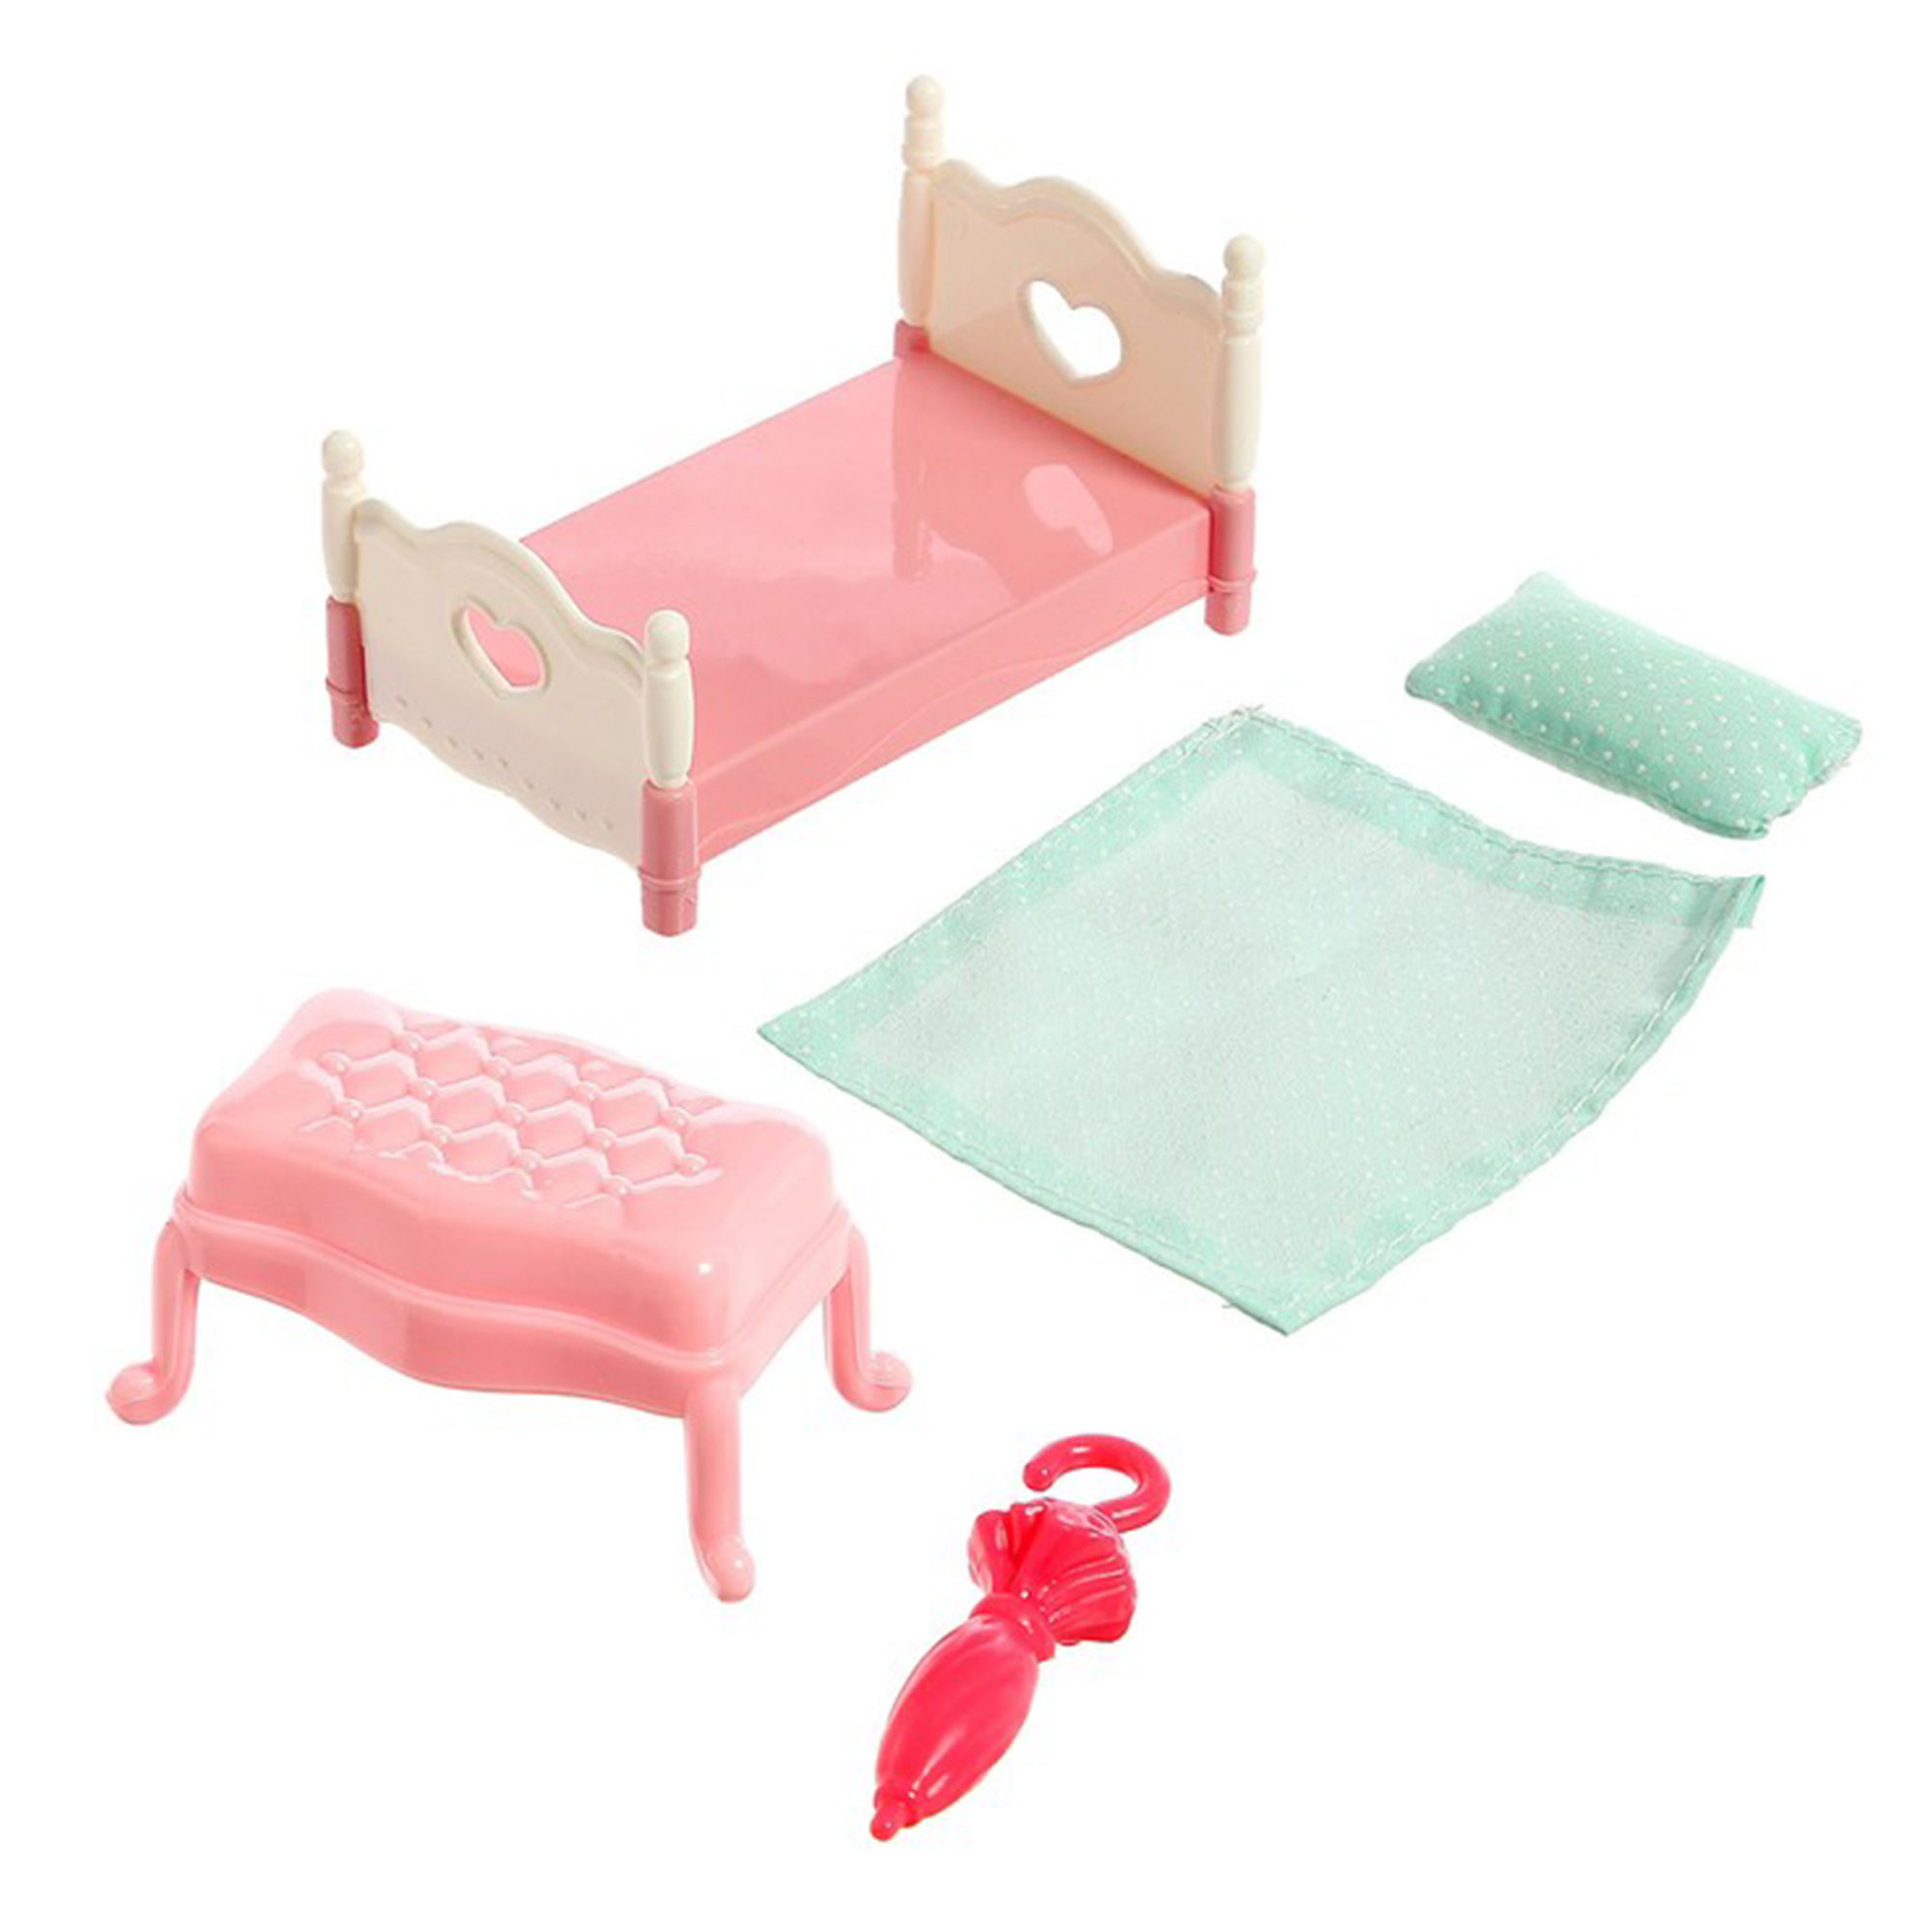 Игровой набор SHARKTOYS игрушечная мебель для куклы Спальня 1040000009 - фото 4